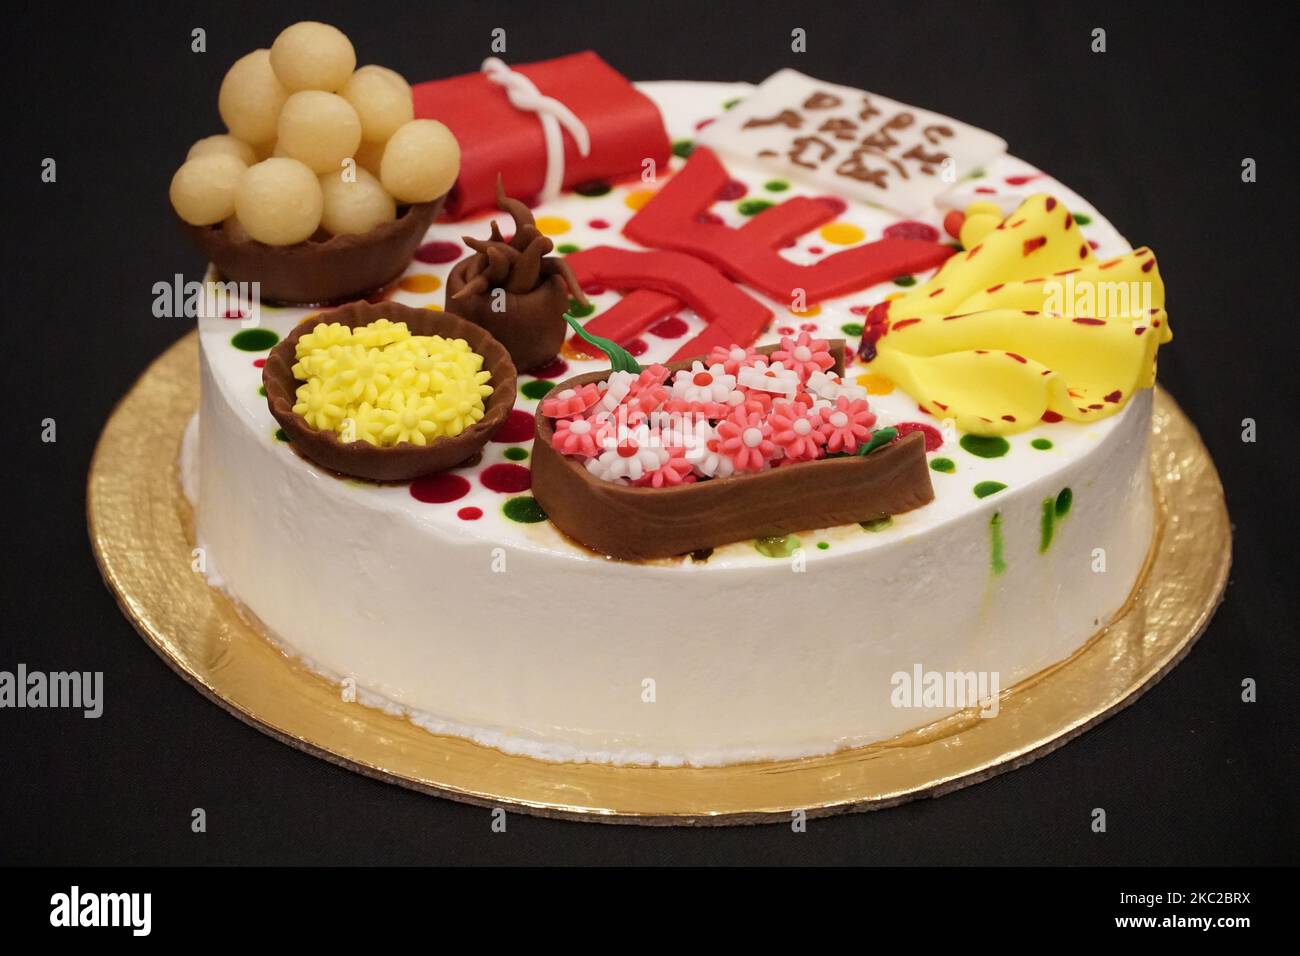 Eine Nahaufnahme eines bunten Kuchens für eine besondere Veranstaltung Stockfoto